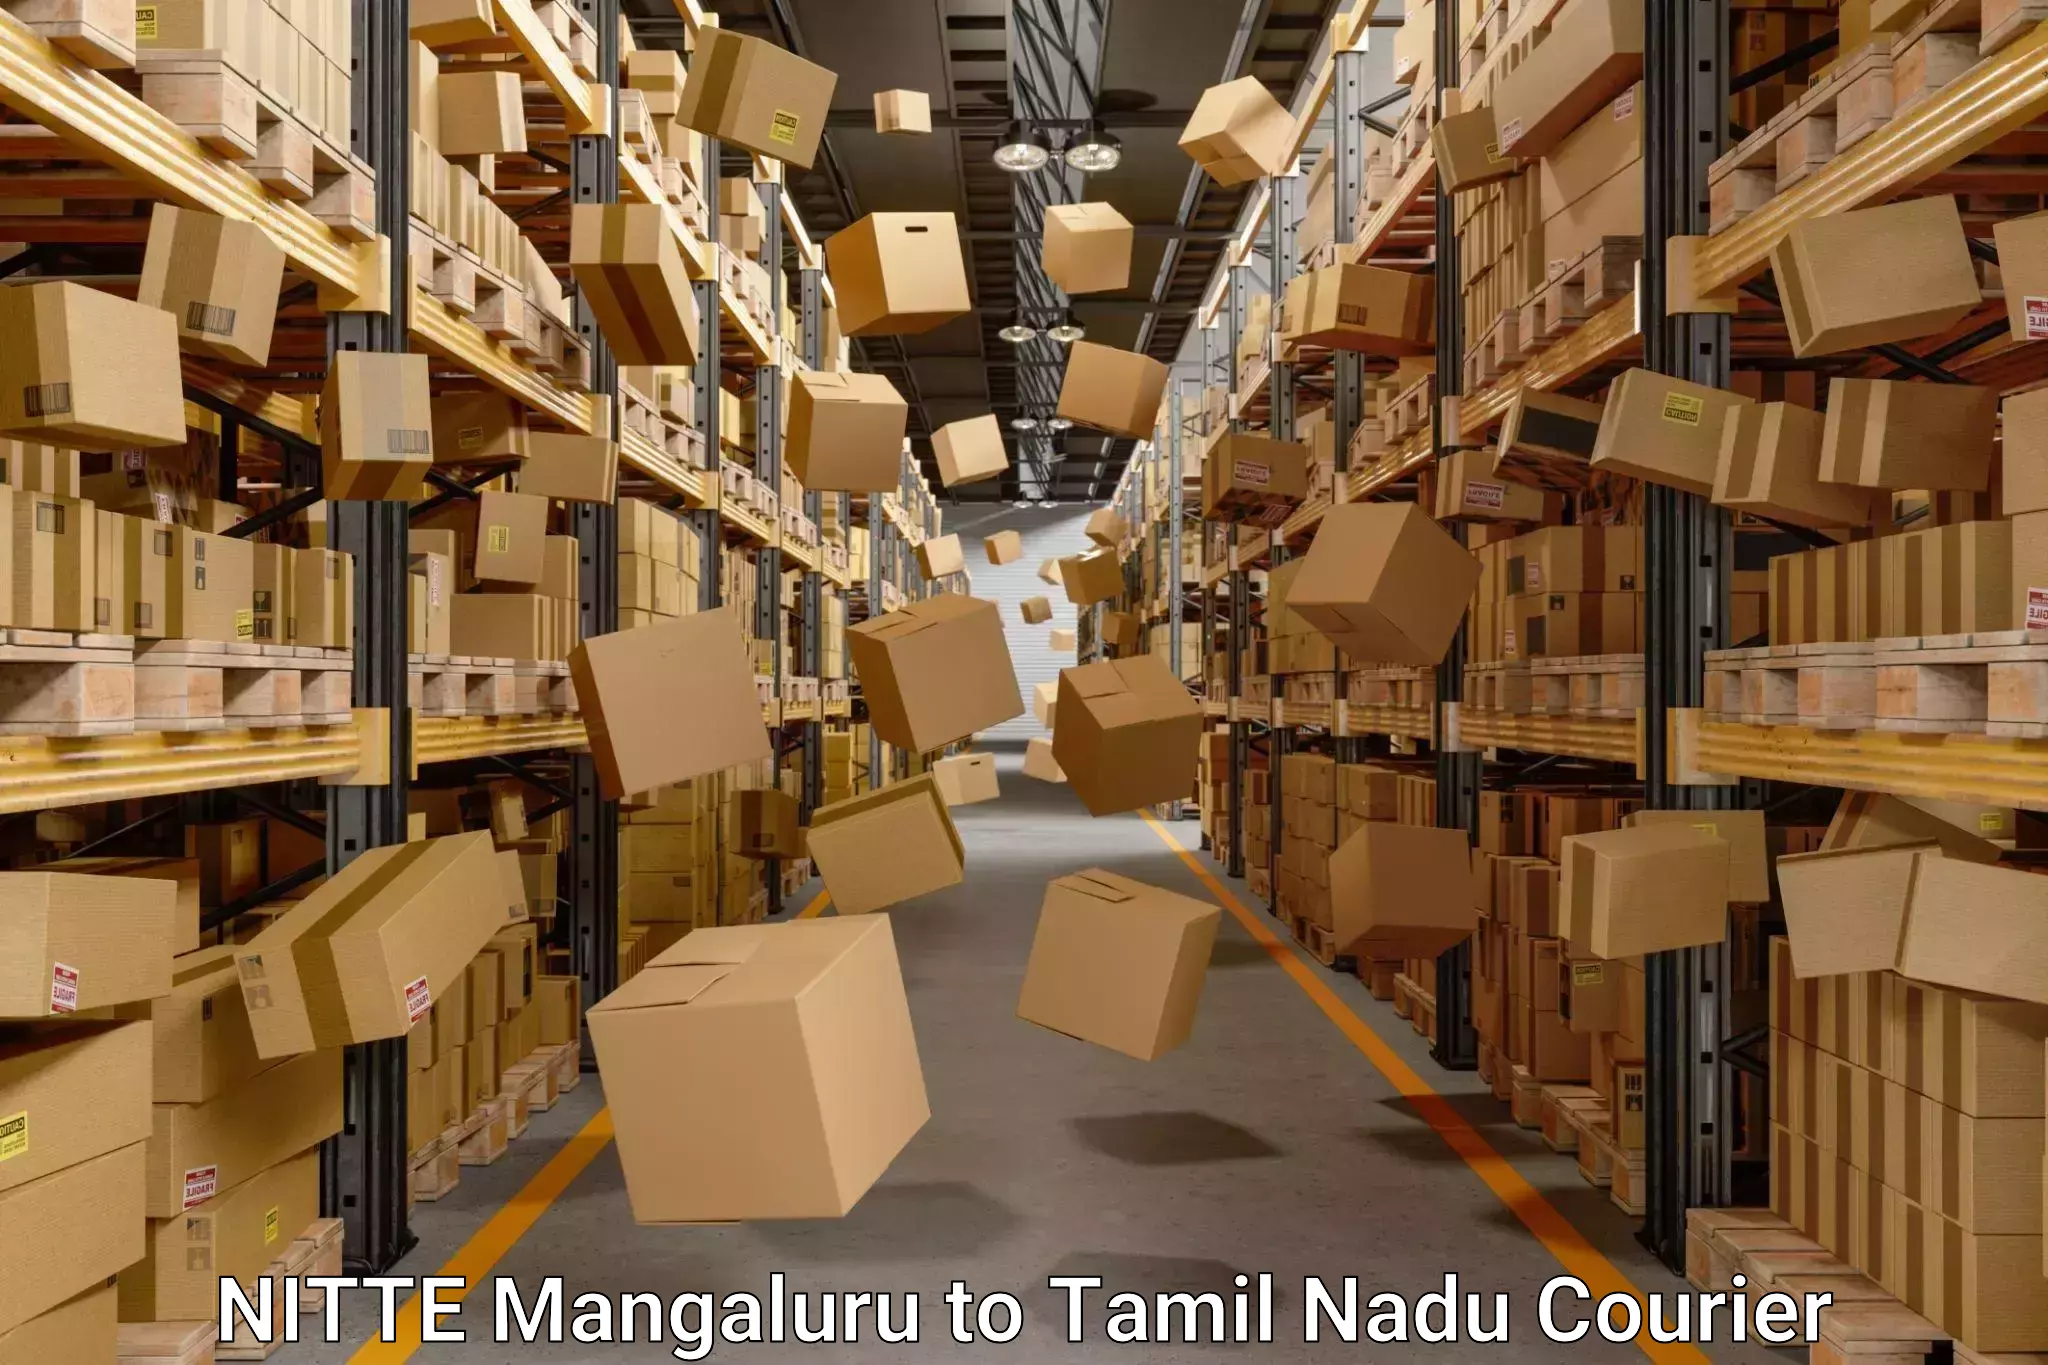 Trusted relocation experts NITTE Mangaluru to Tirukalukundram